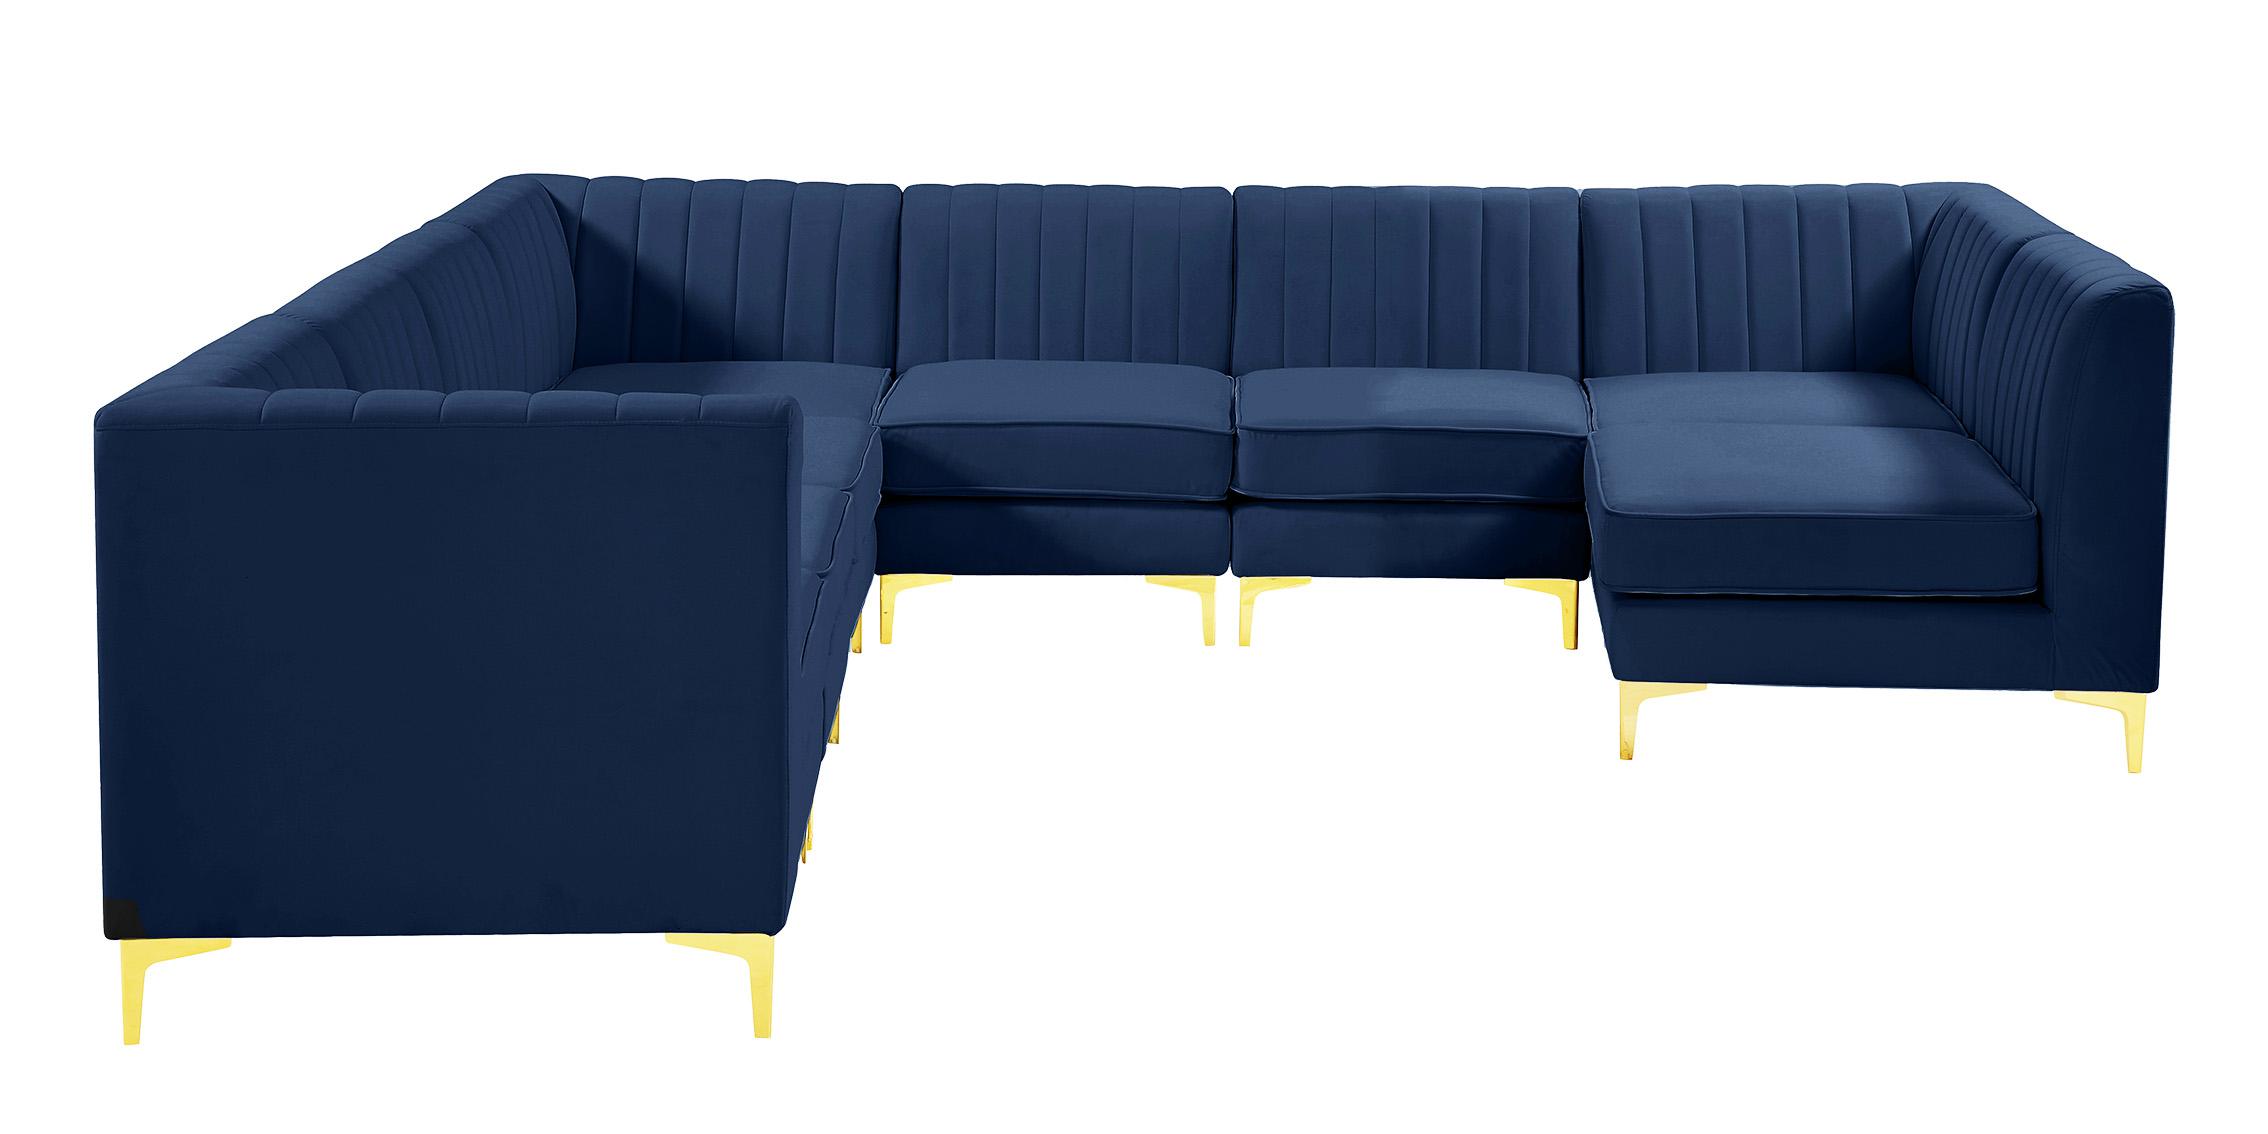 

    
Meridian Furniture ALINA 604Navy-Sec8A Modular Sectional Sofa Navy 604Navy-Sec8A
